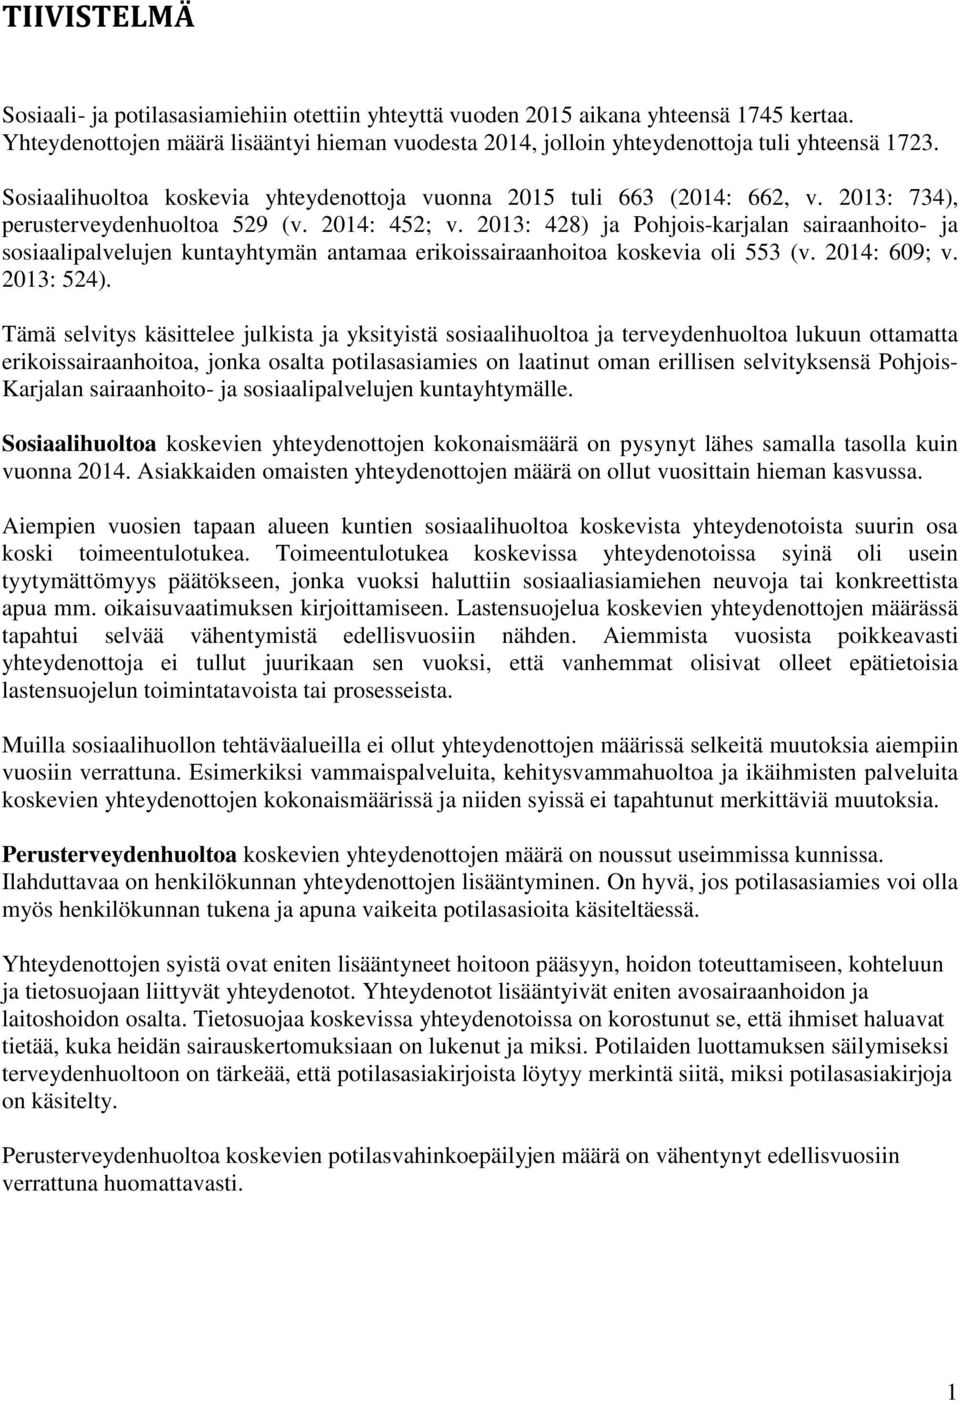 2013: 428) ja Pohjois-karjalan sairaanhoito- ja sosiaalipalvelujen kuntayhtymän antamaa erikoissairaanhoitoa koskevia oli 553 (v. 2014: 609; v. 2013: 524).